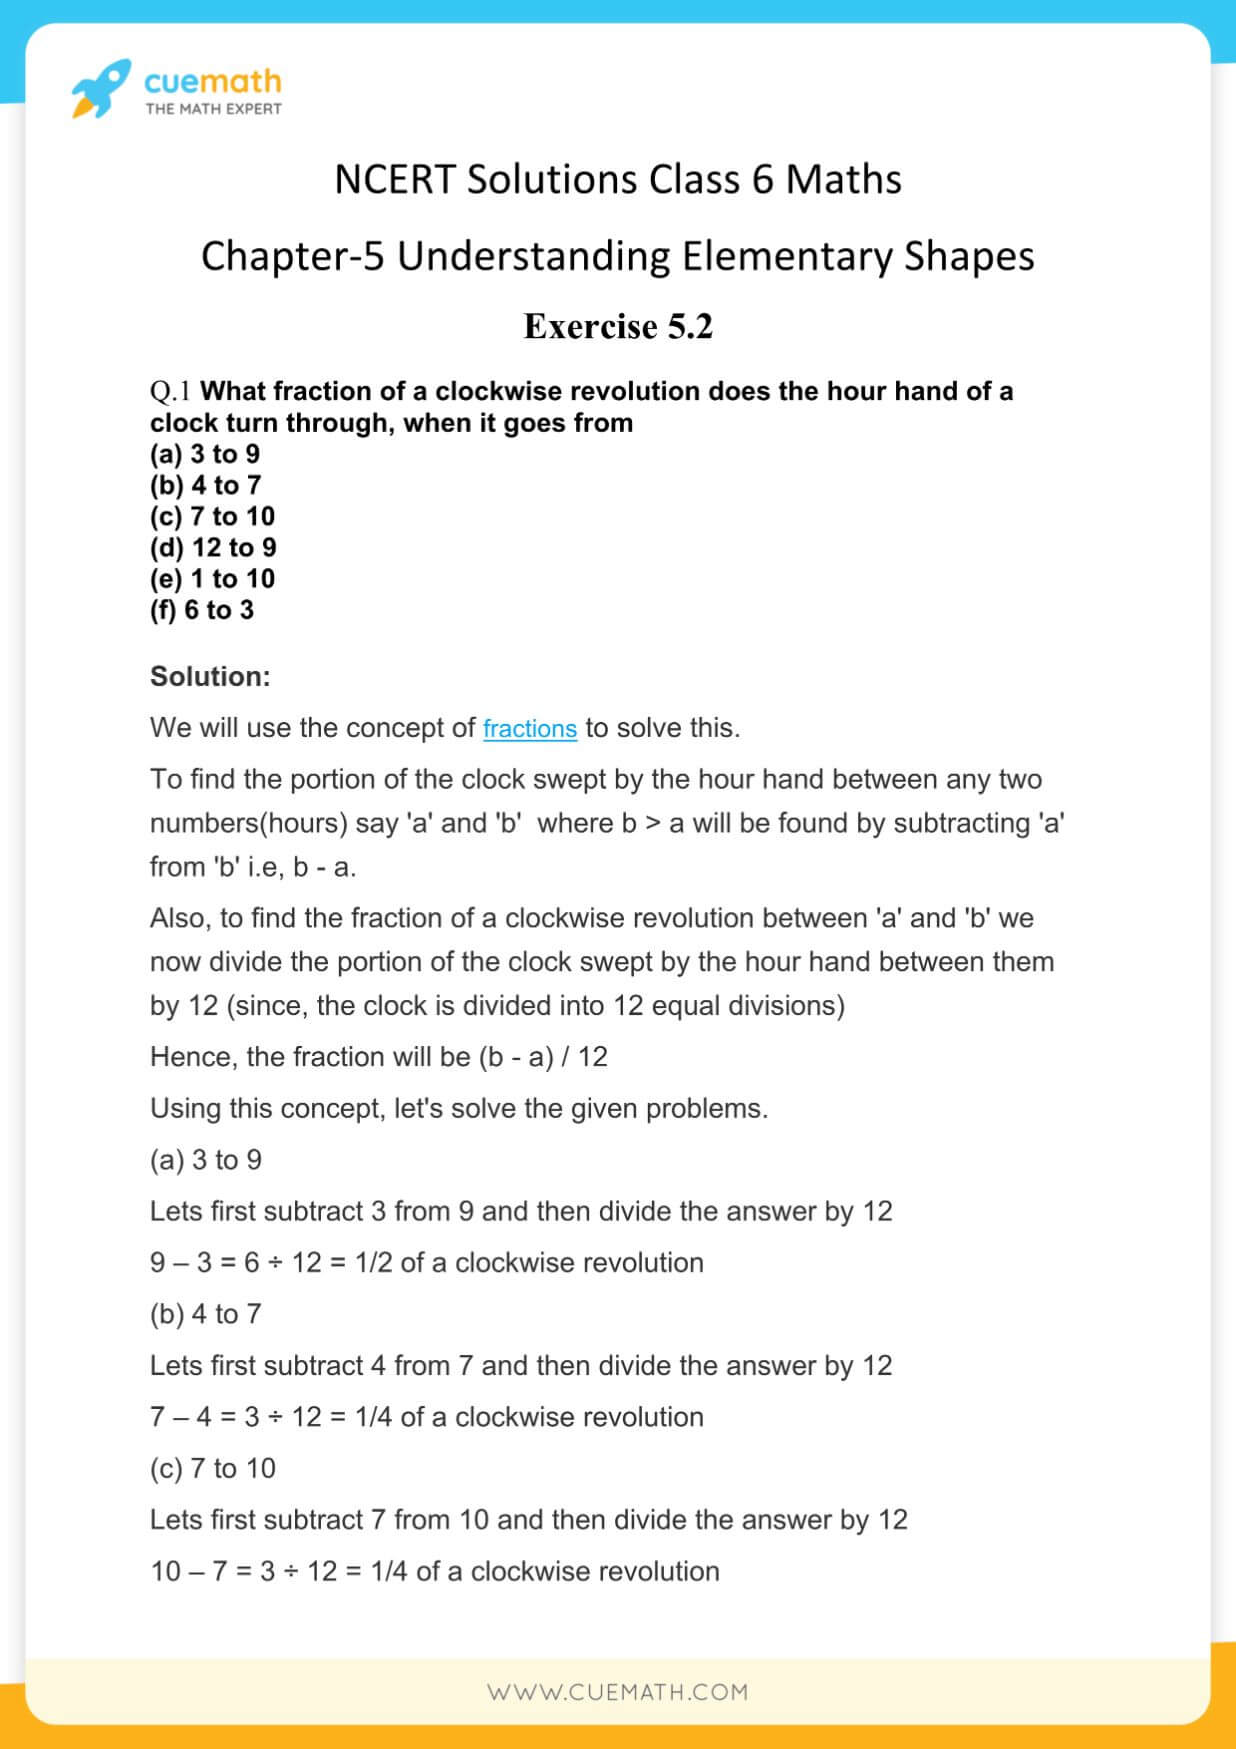 NCERT Solutions Class 6 Maths Chapter 5-6